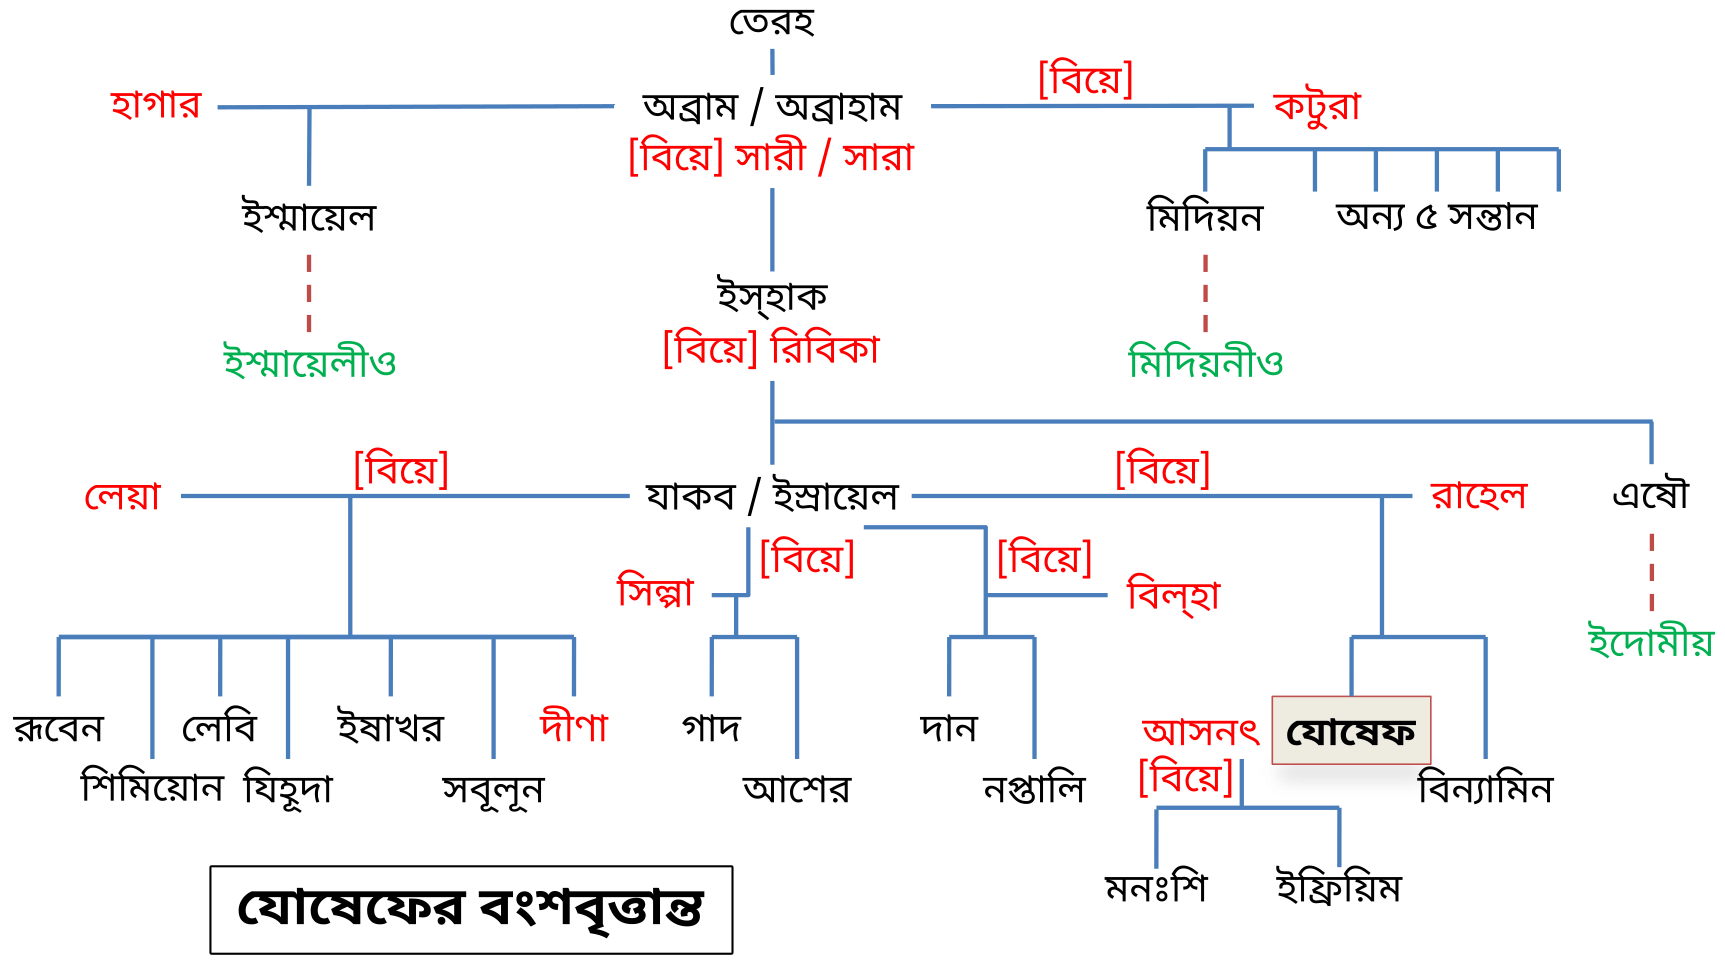 Joseph Family Tree (Bengali/Bangla/ বাংলা BN)